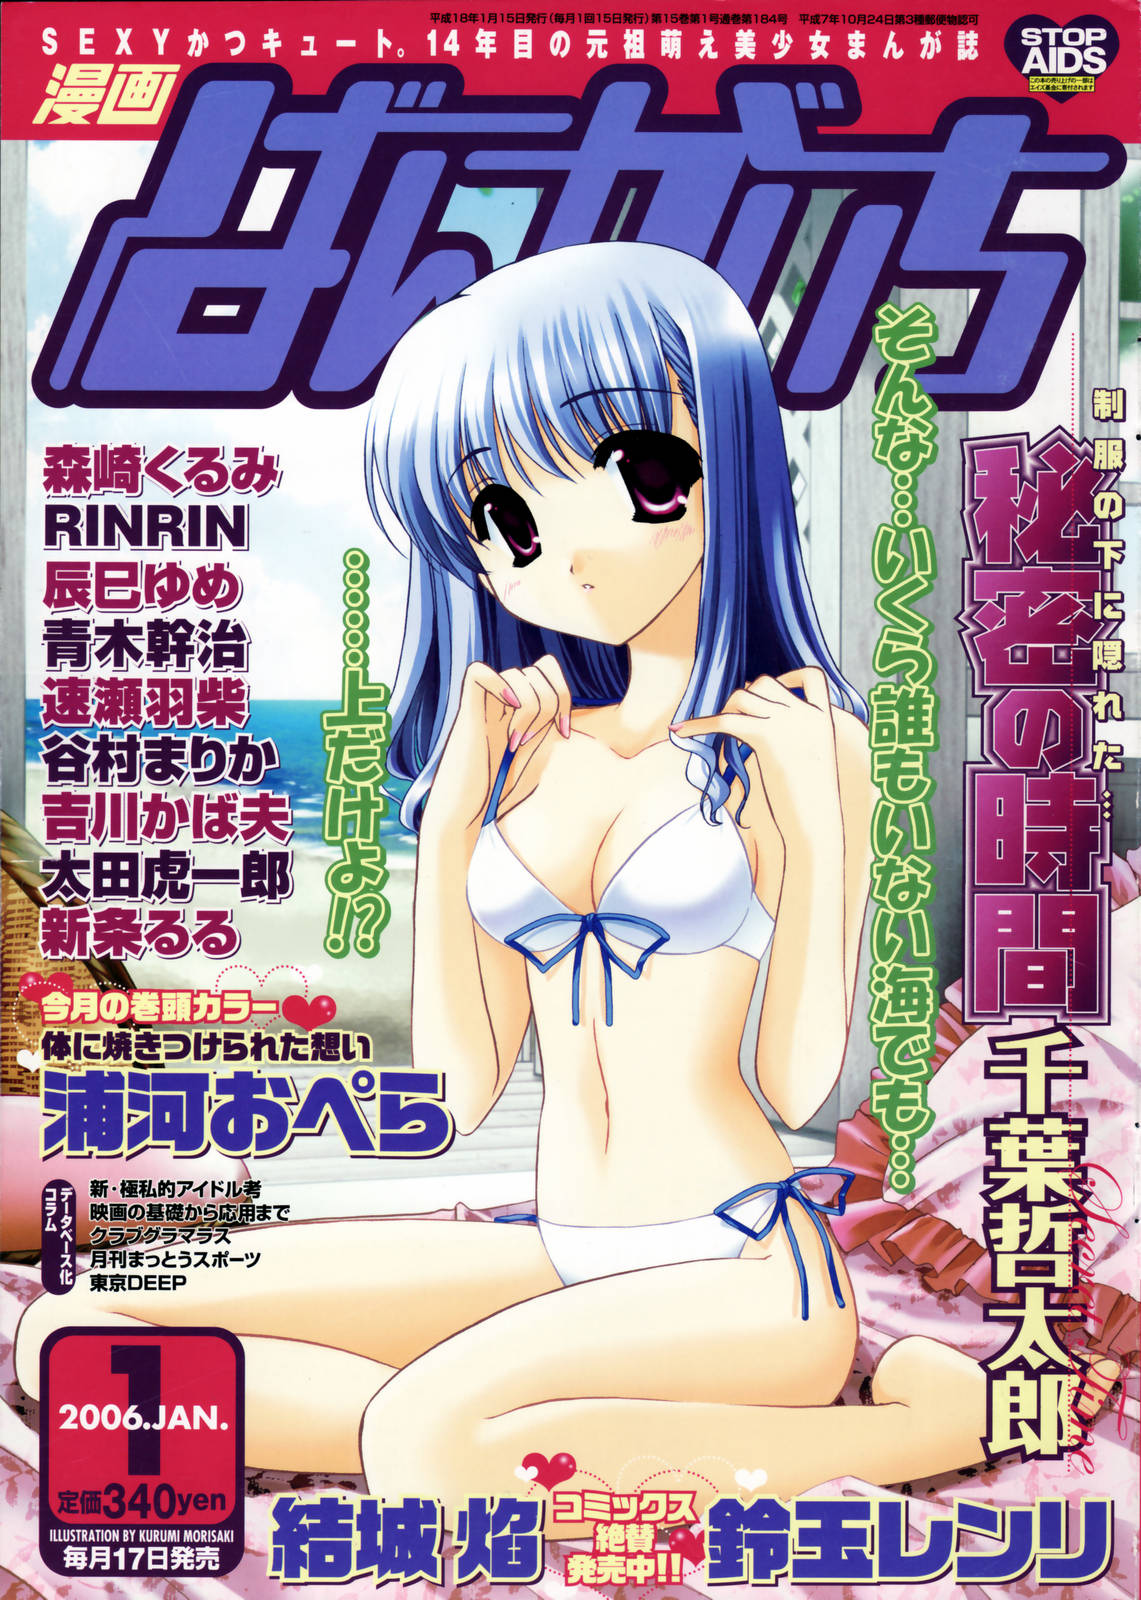 Manga Bangaichi 2006-01 page 1 full